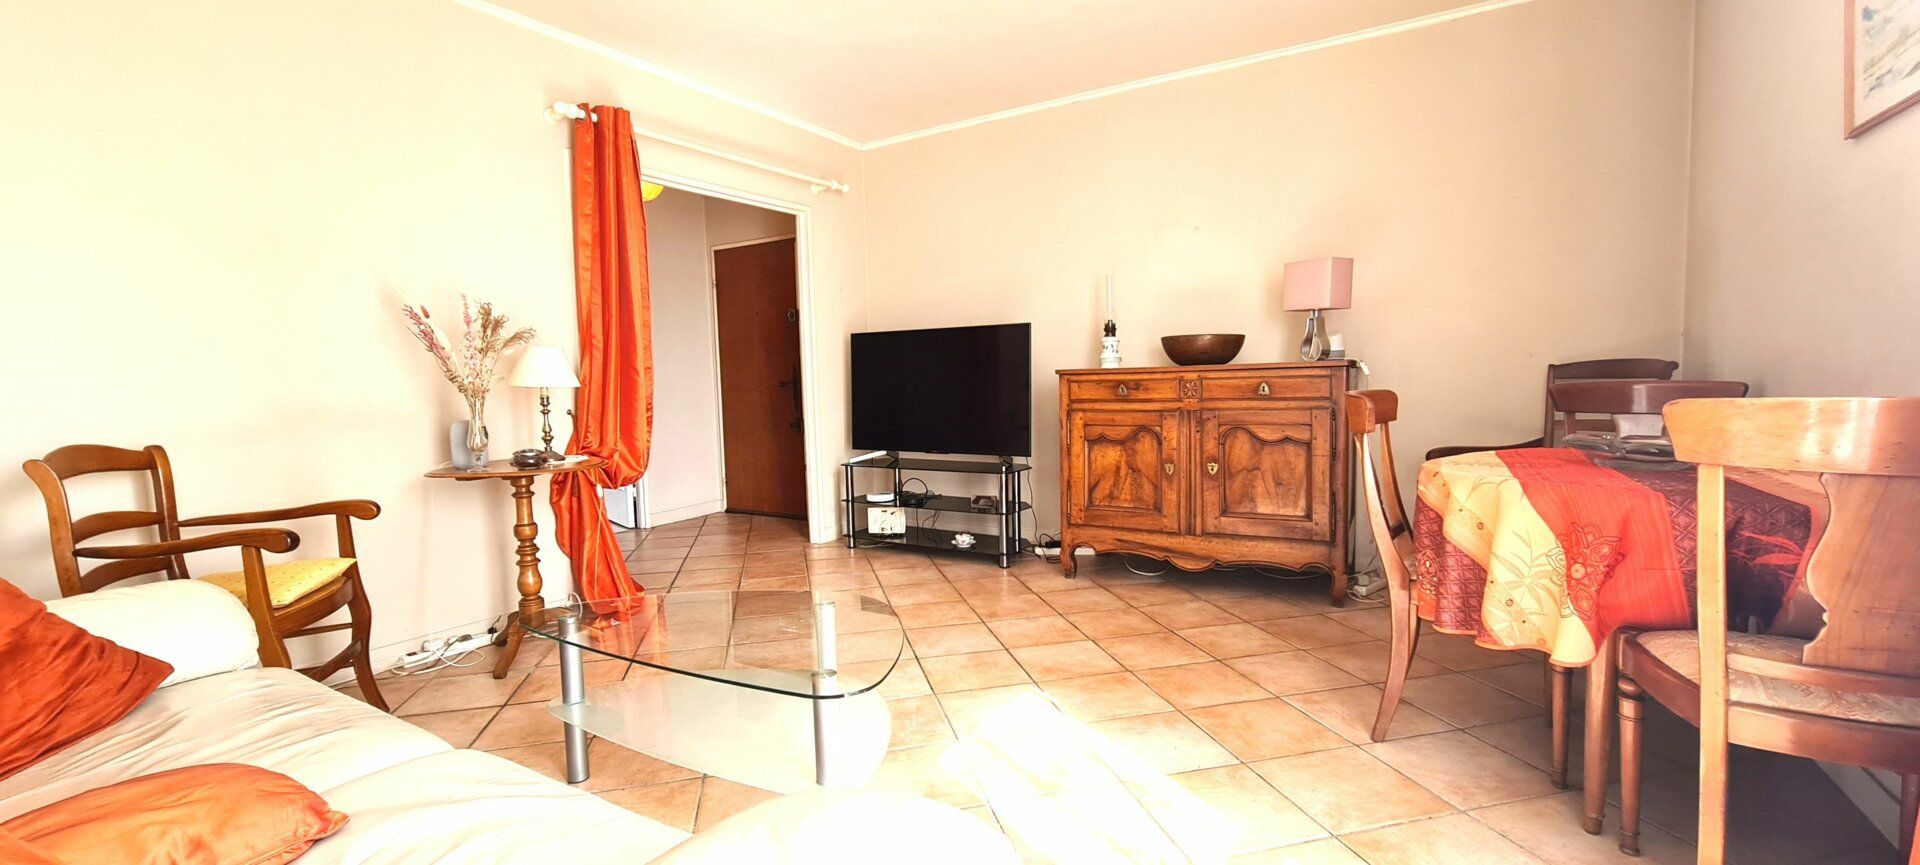 Appartement à vendre 3 58.16m2 à Boussy-Saint-Antoine vignette-2